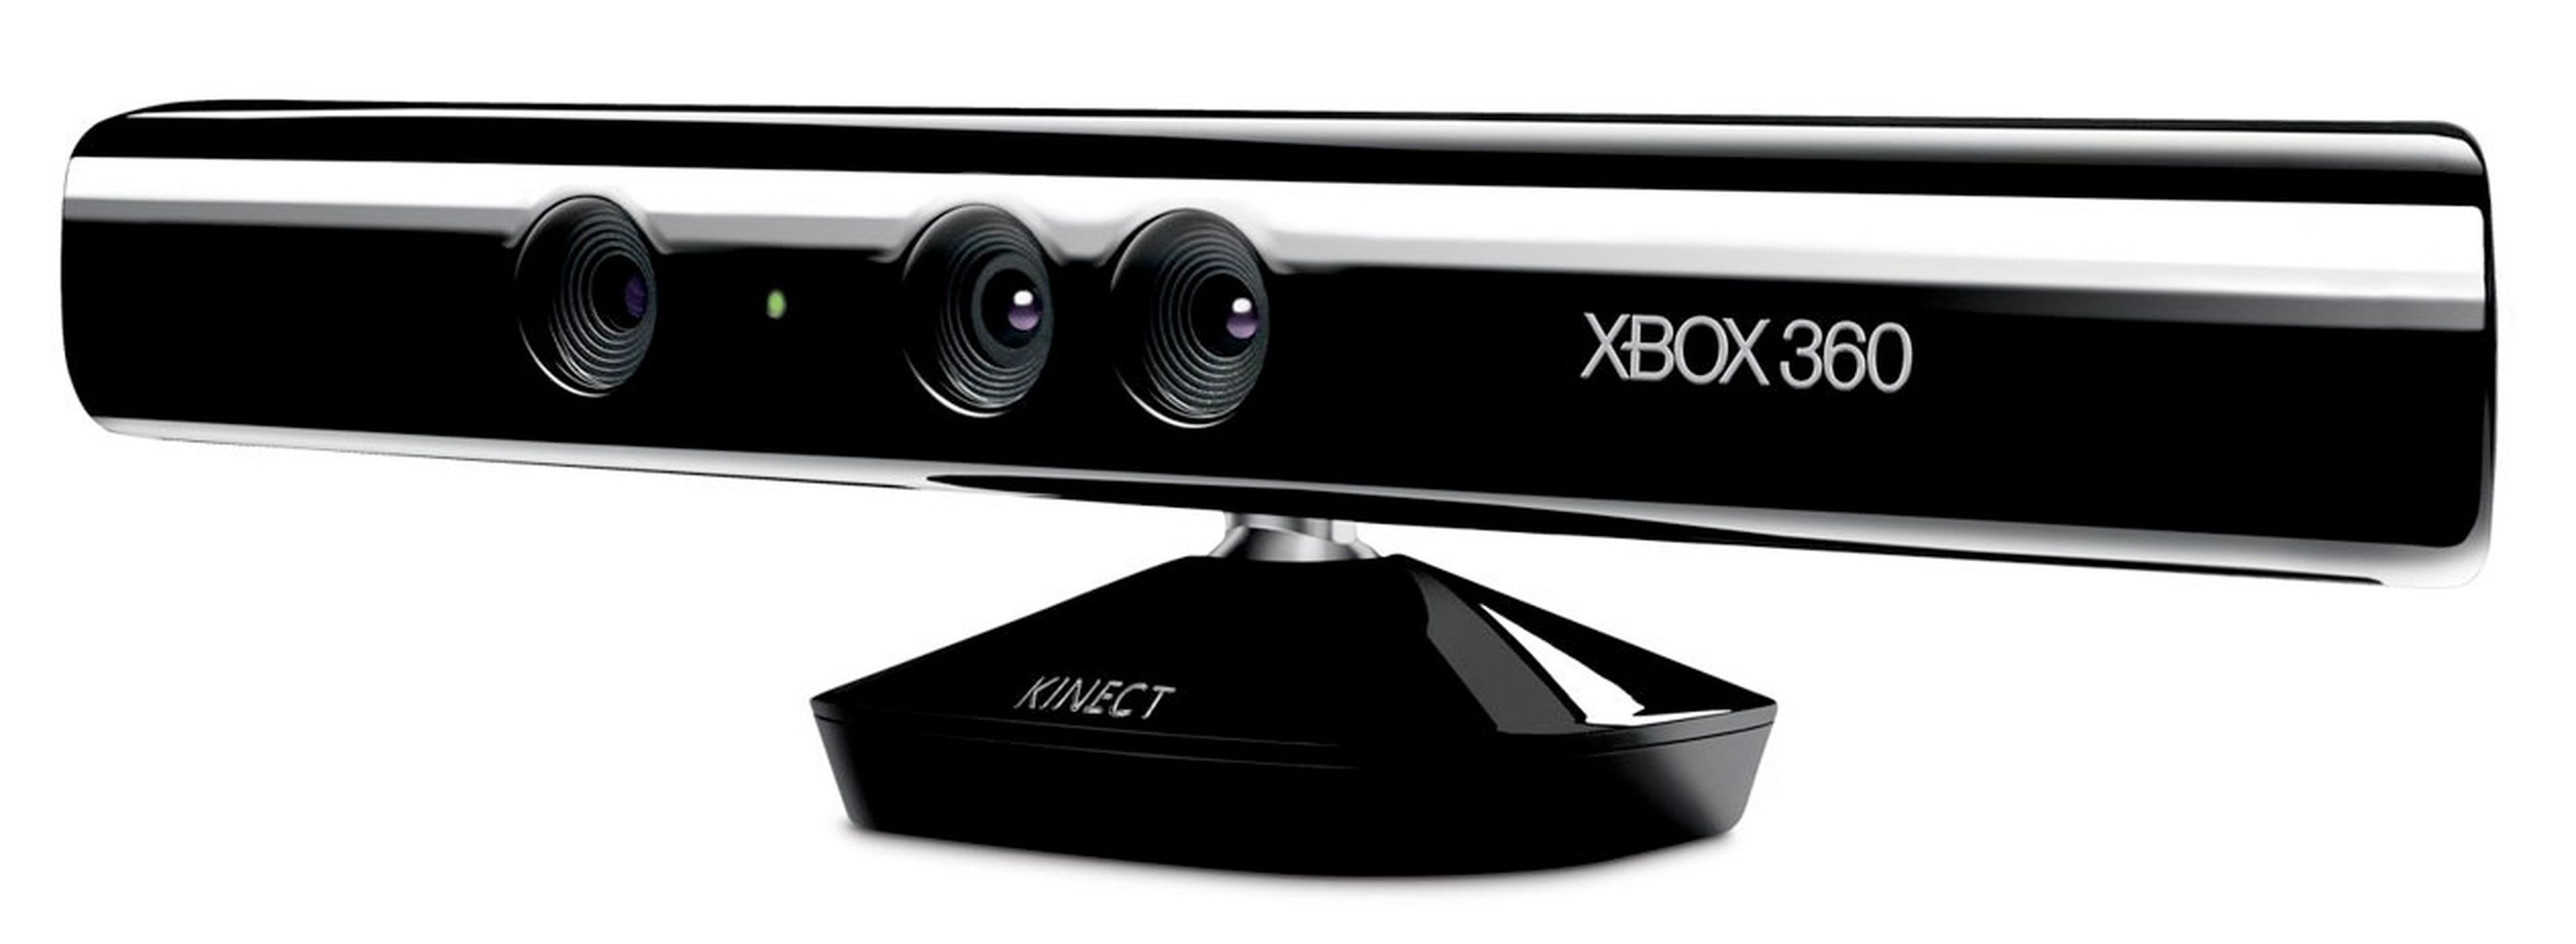 Callao celebrará el lanzamiento de Kinect